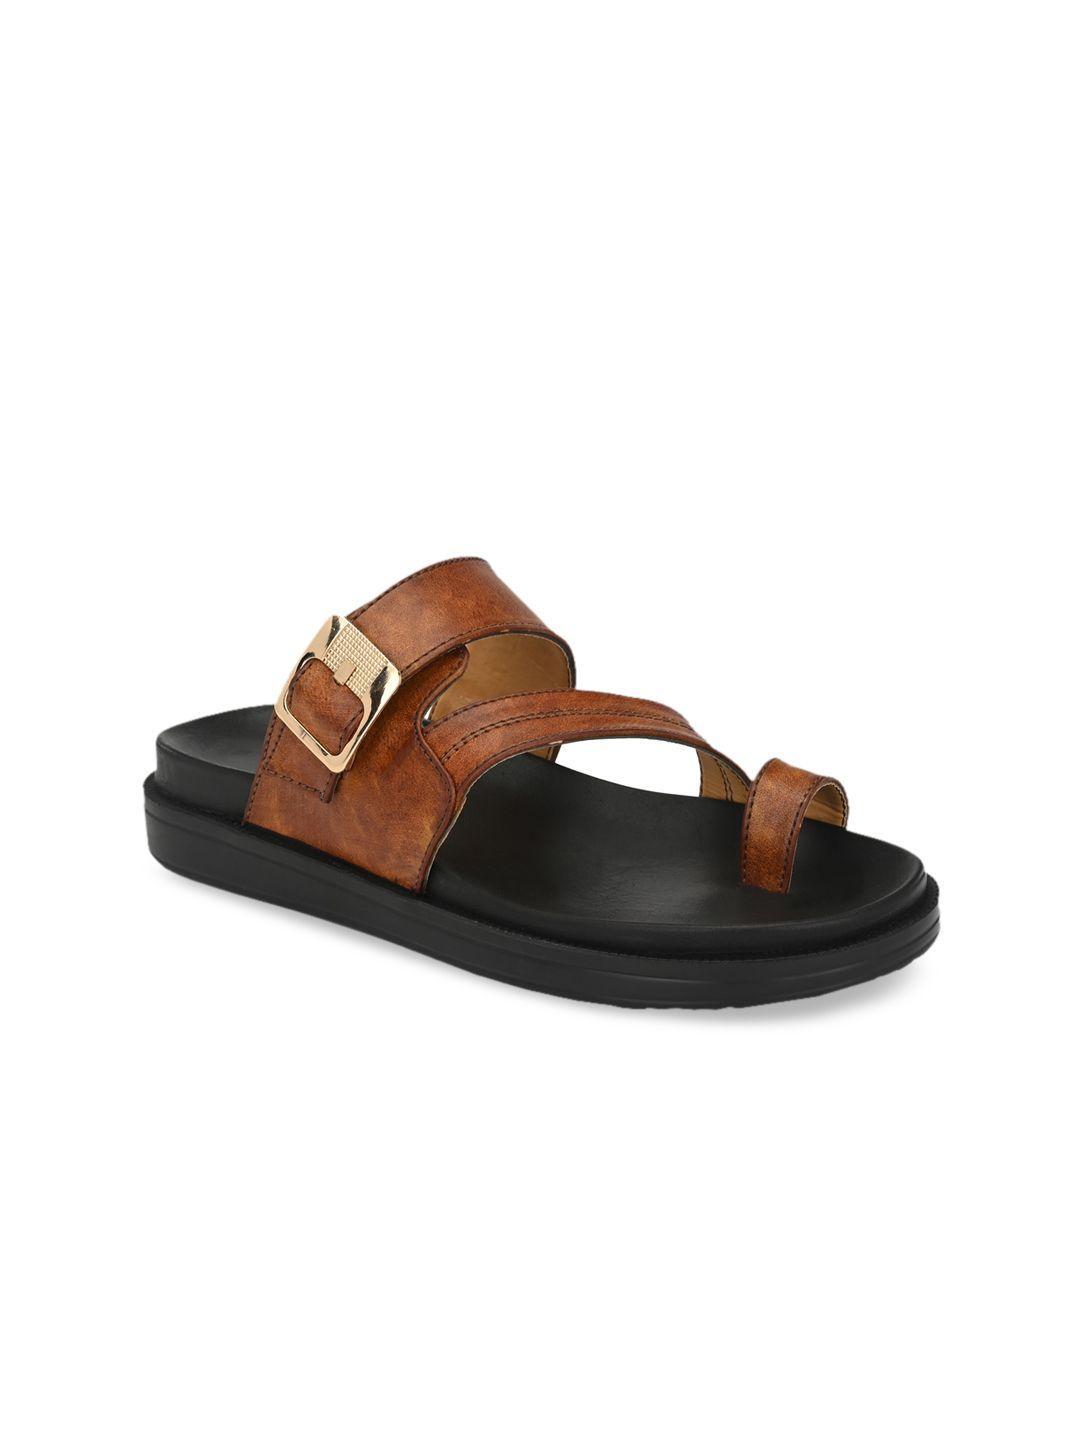 eego italy men tan brown comfort sandals